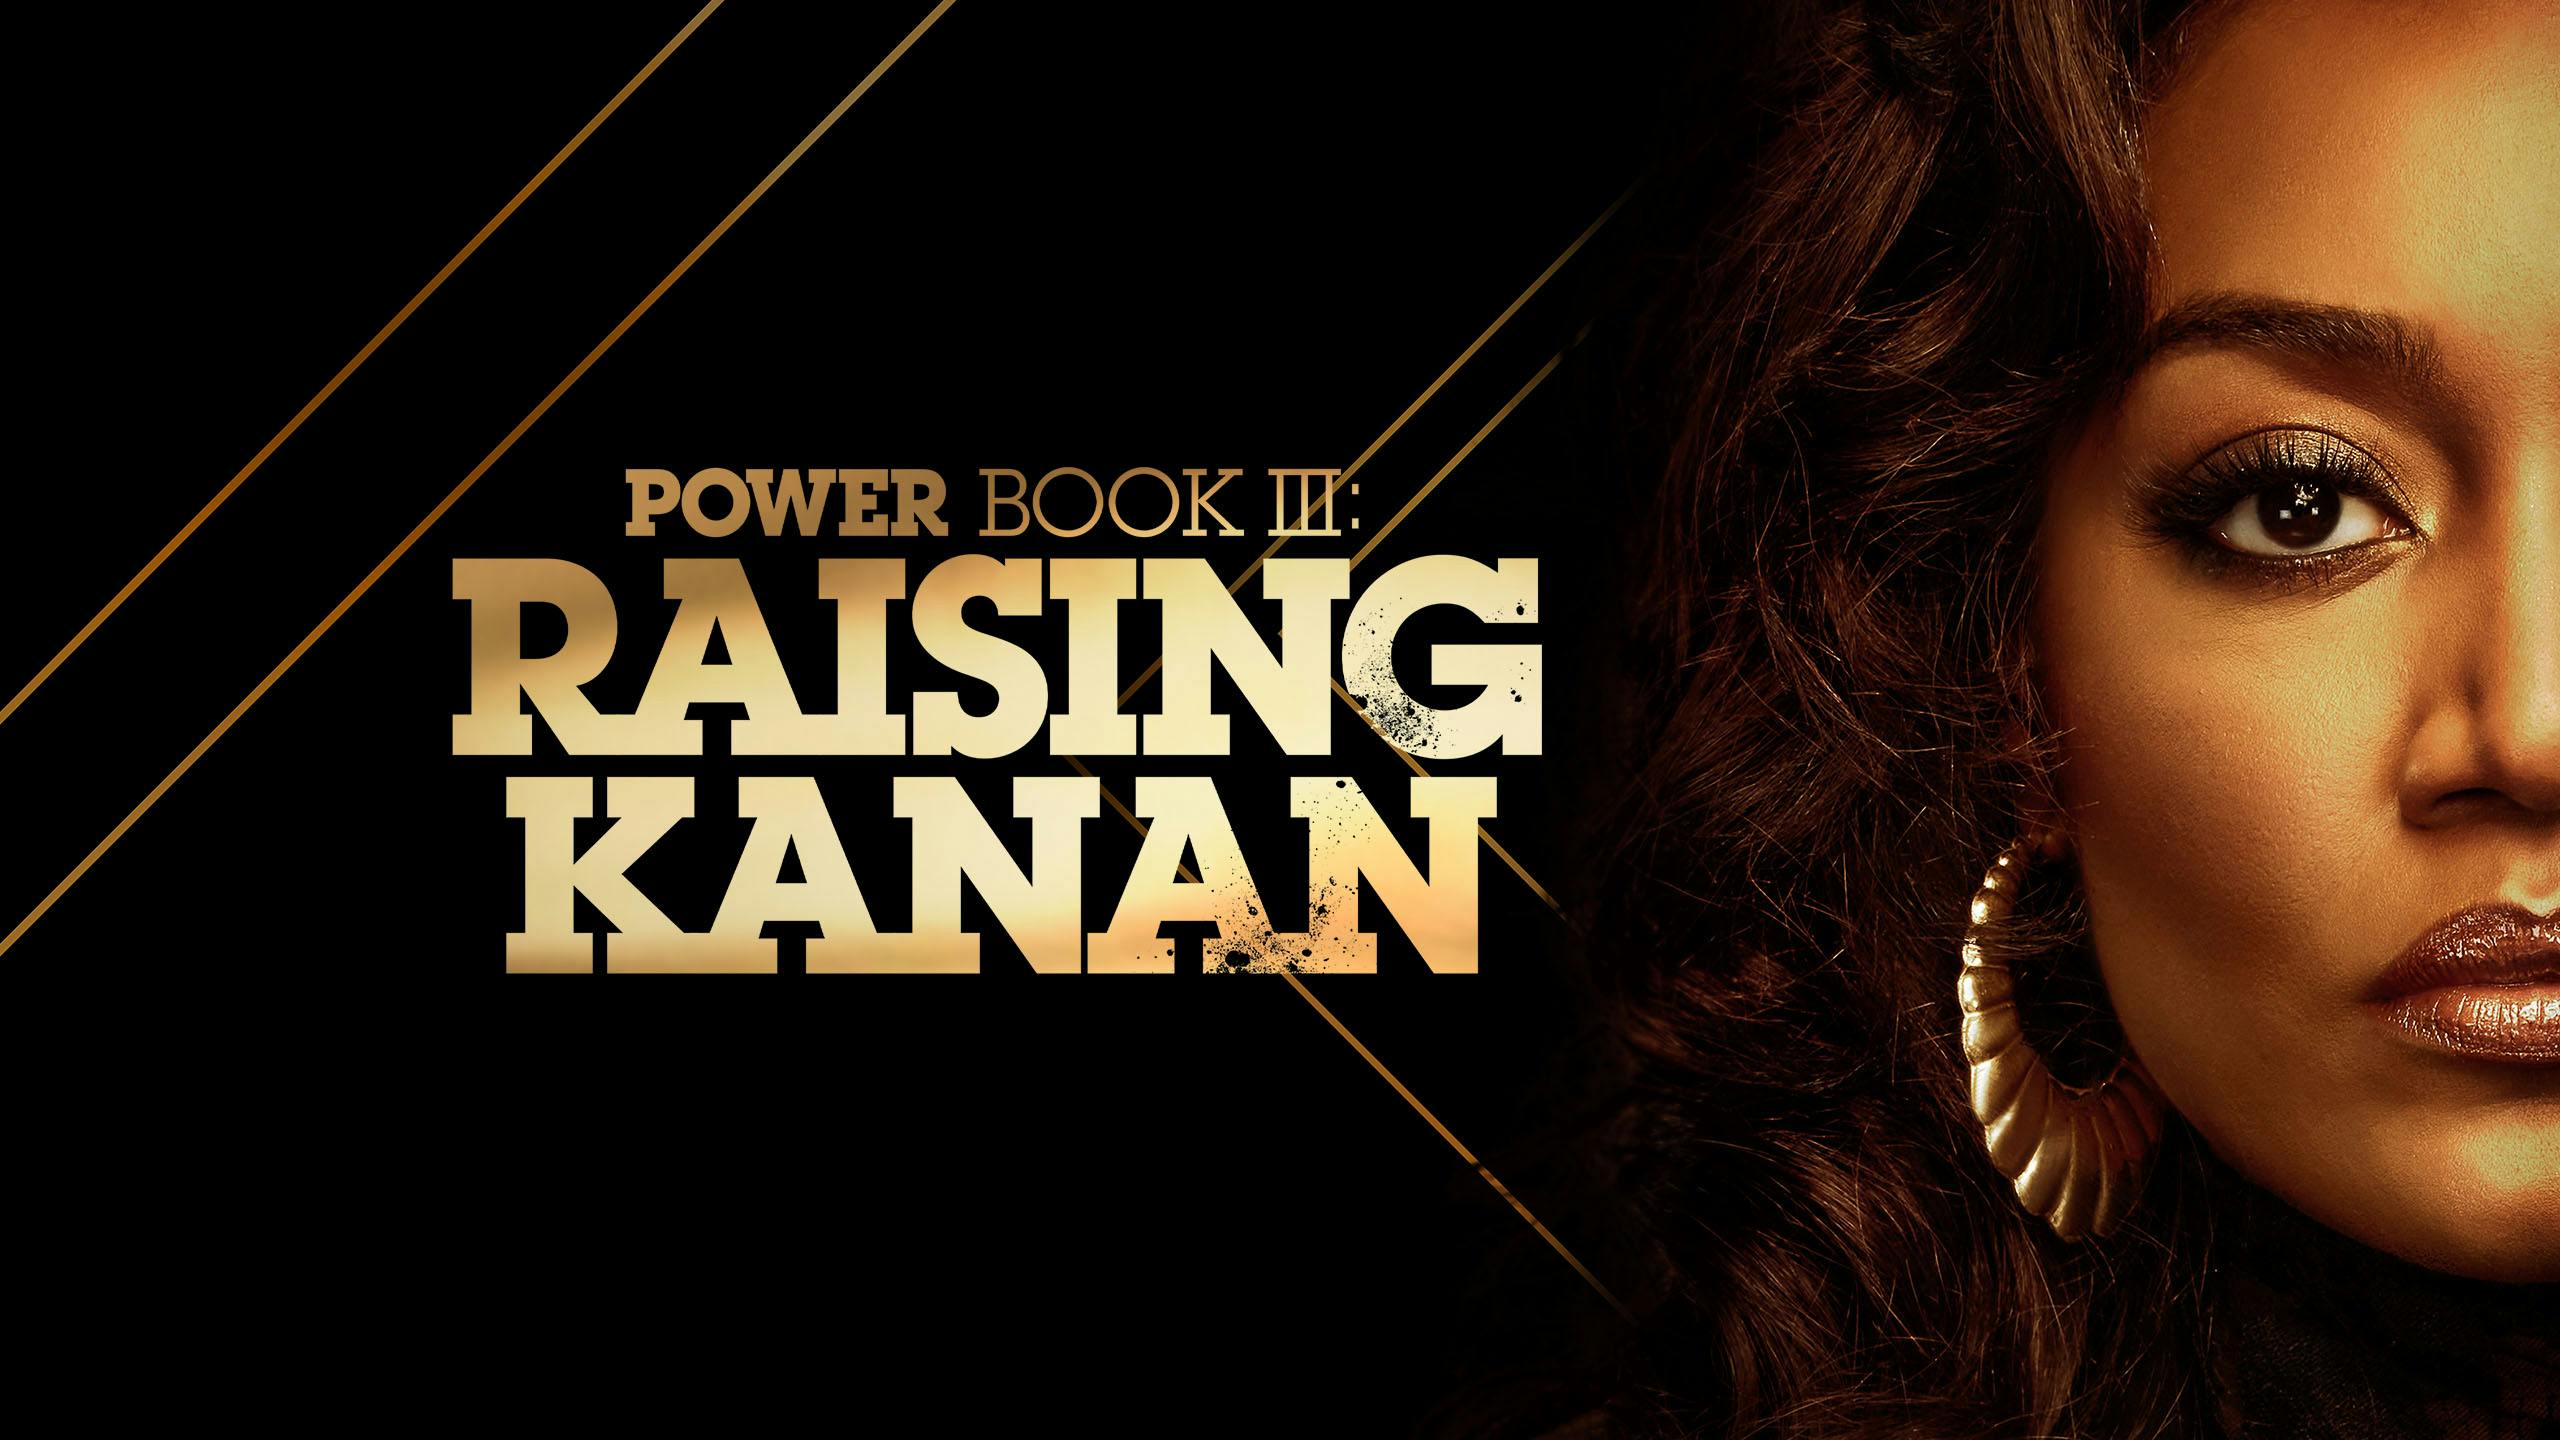 دانلود زیرنویس سریال Power Book III: Raising Kanan 2021 – بلو سابتایتل